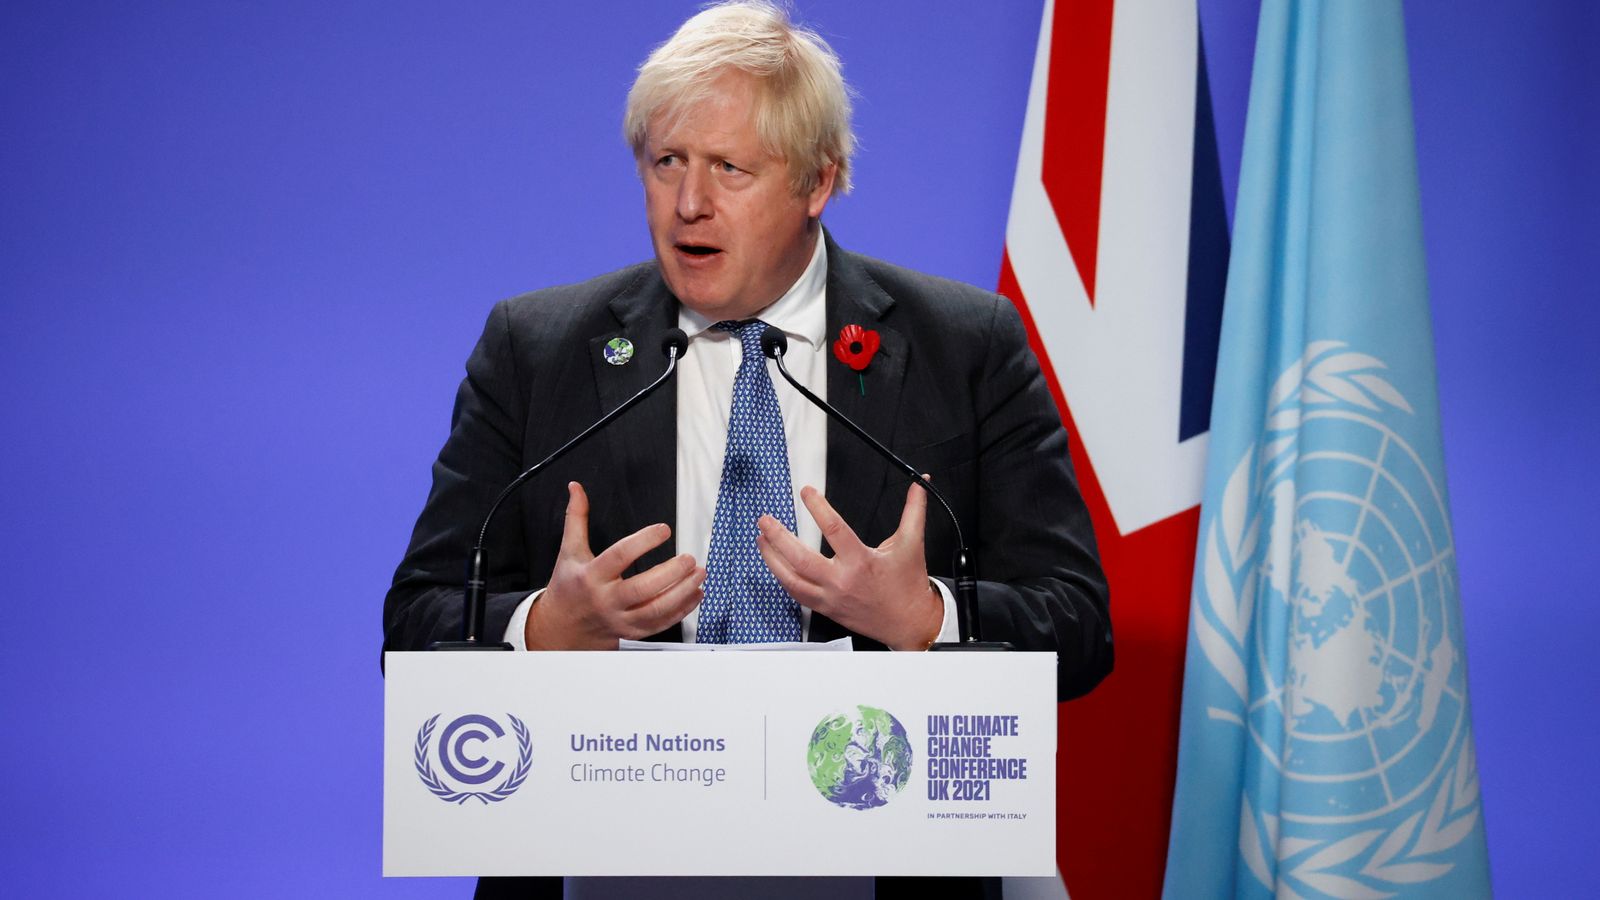 Anggota parlemen yang melanggar aturan tentang pekerjaan kedua ‘harus dihukum,’ kata PM Boris Johnson |  Berita Politik